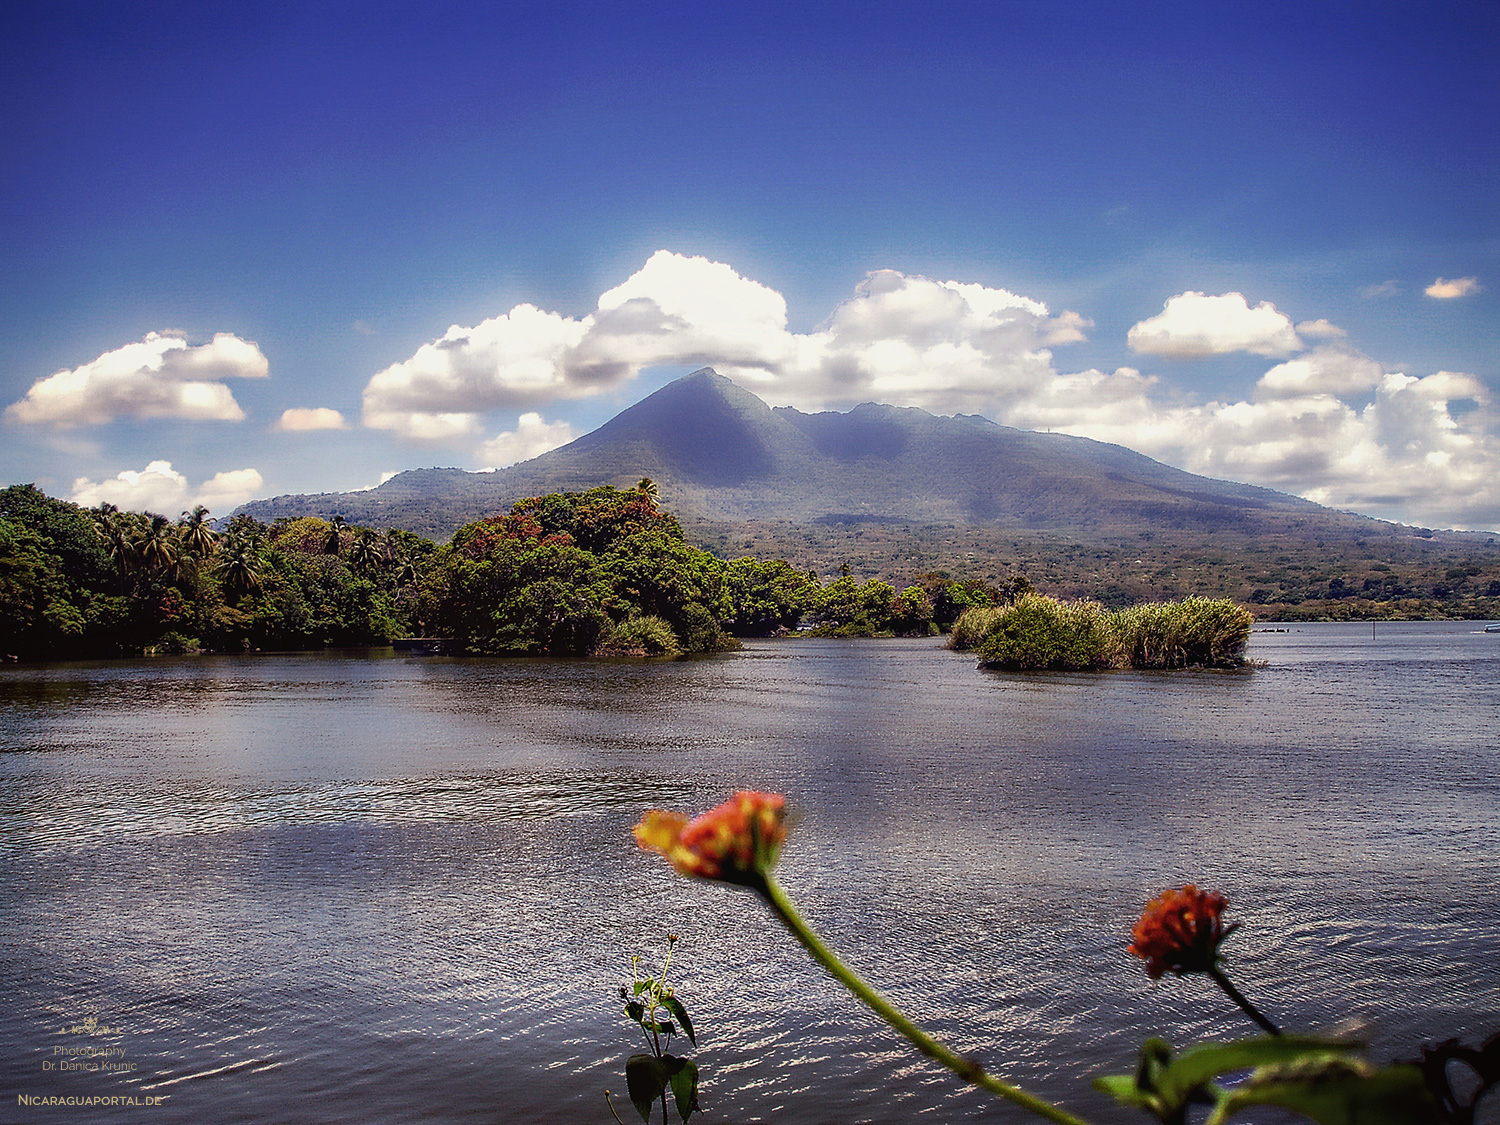 Nicaragua: GRANADA: Nicaragua See, El Lago de Nicaragua, Cocibolca, Las Isletas, Mombacho